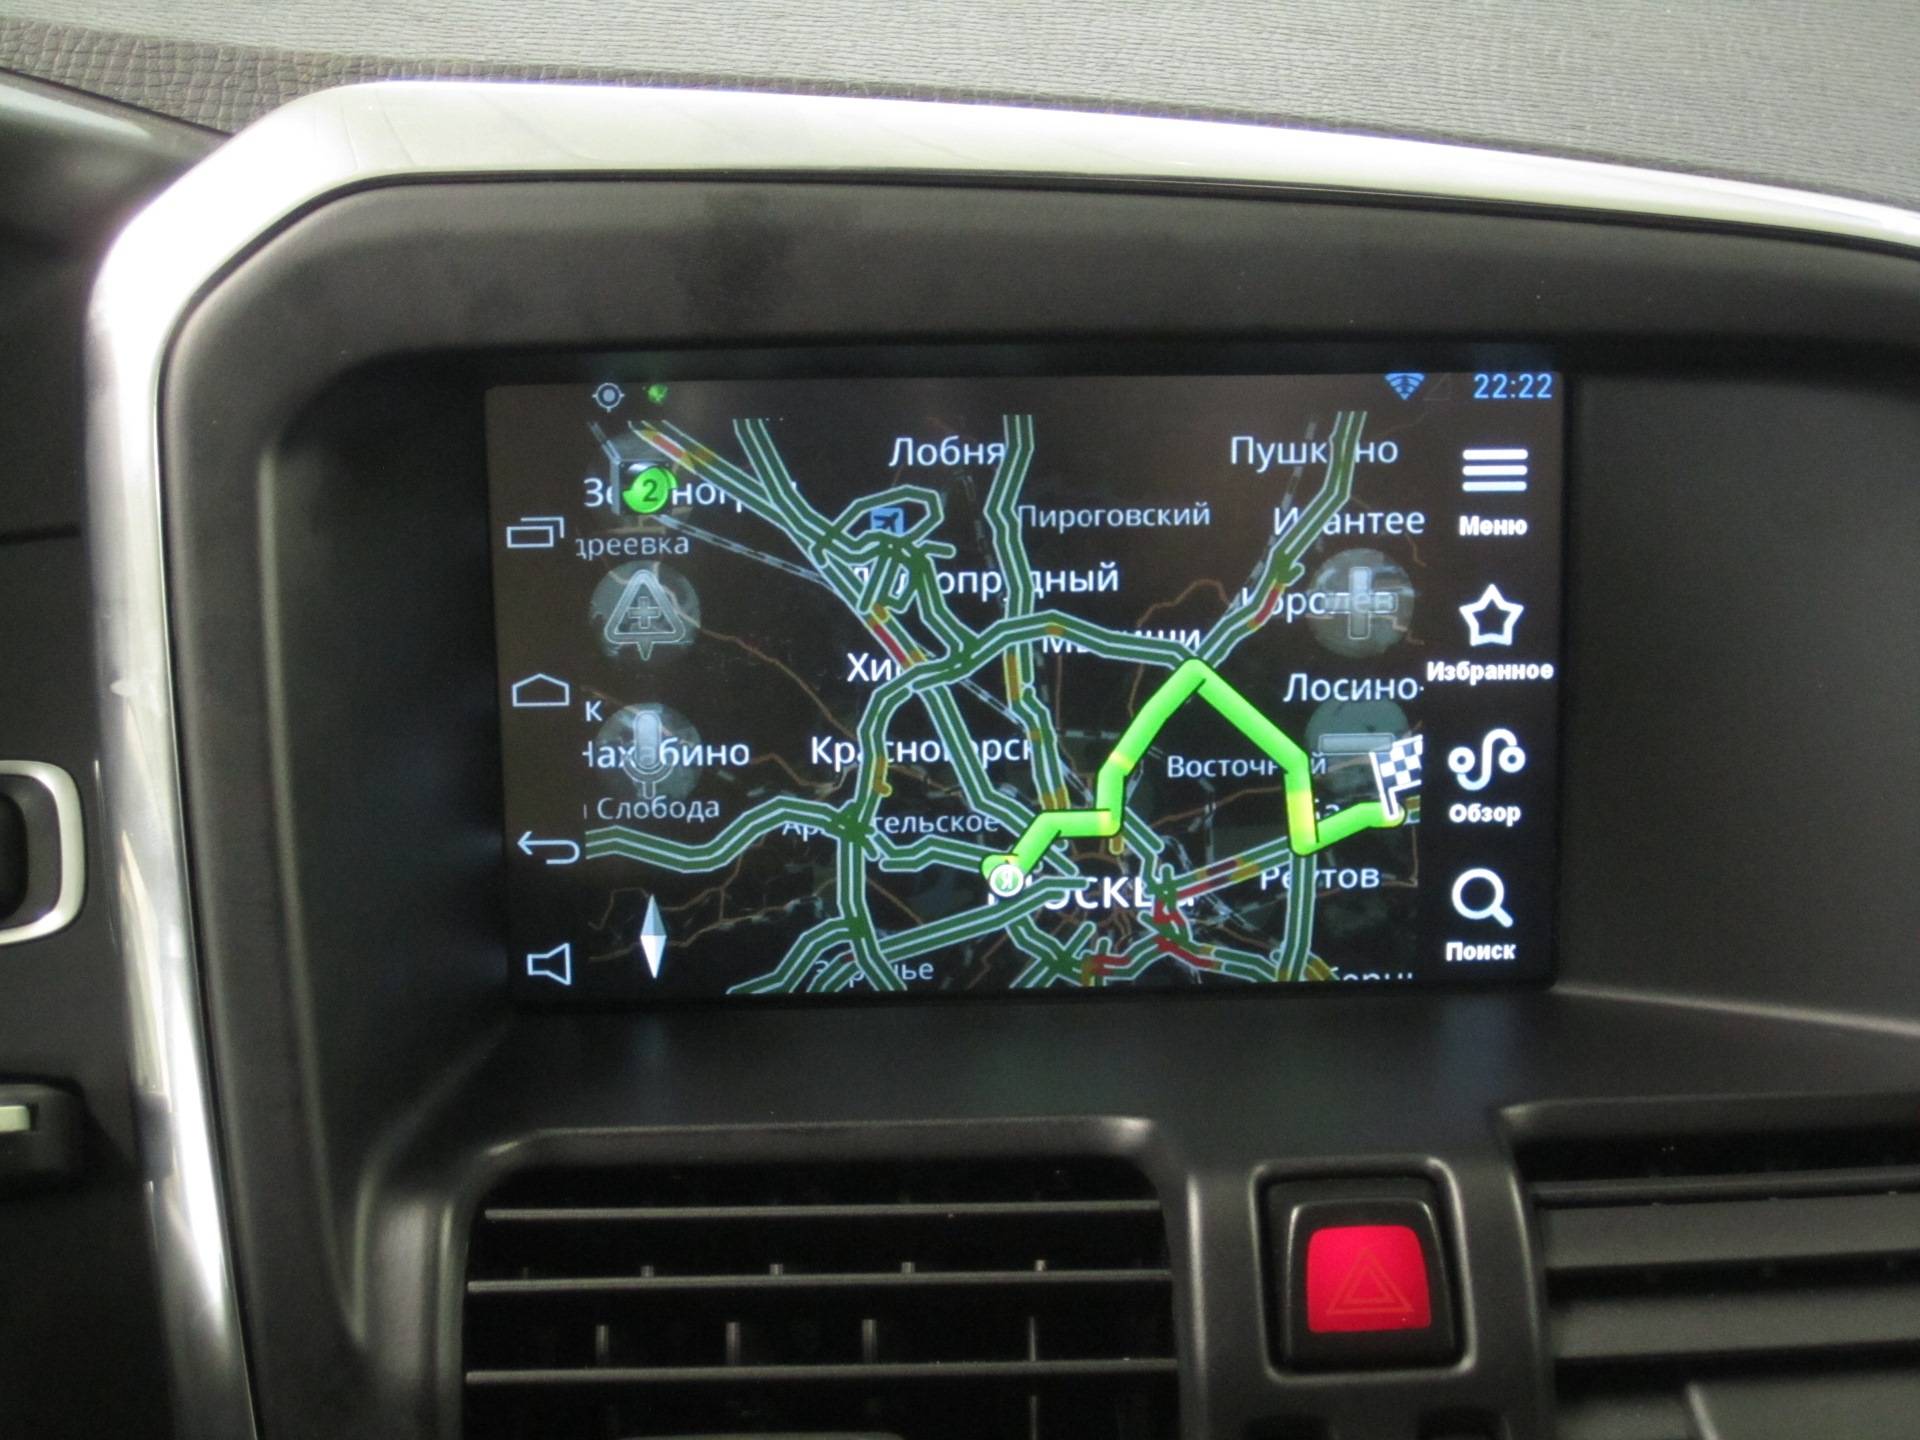 Навигатор android volvo xc60 – расширяем возможности штатной магнитолы